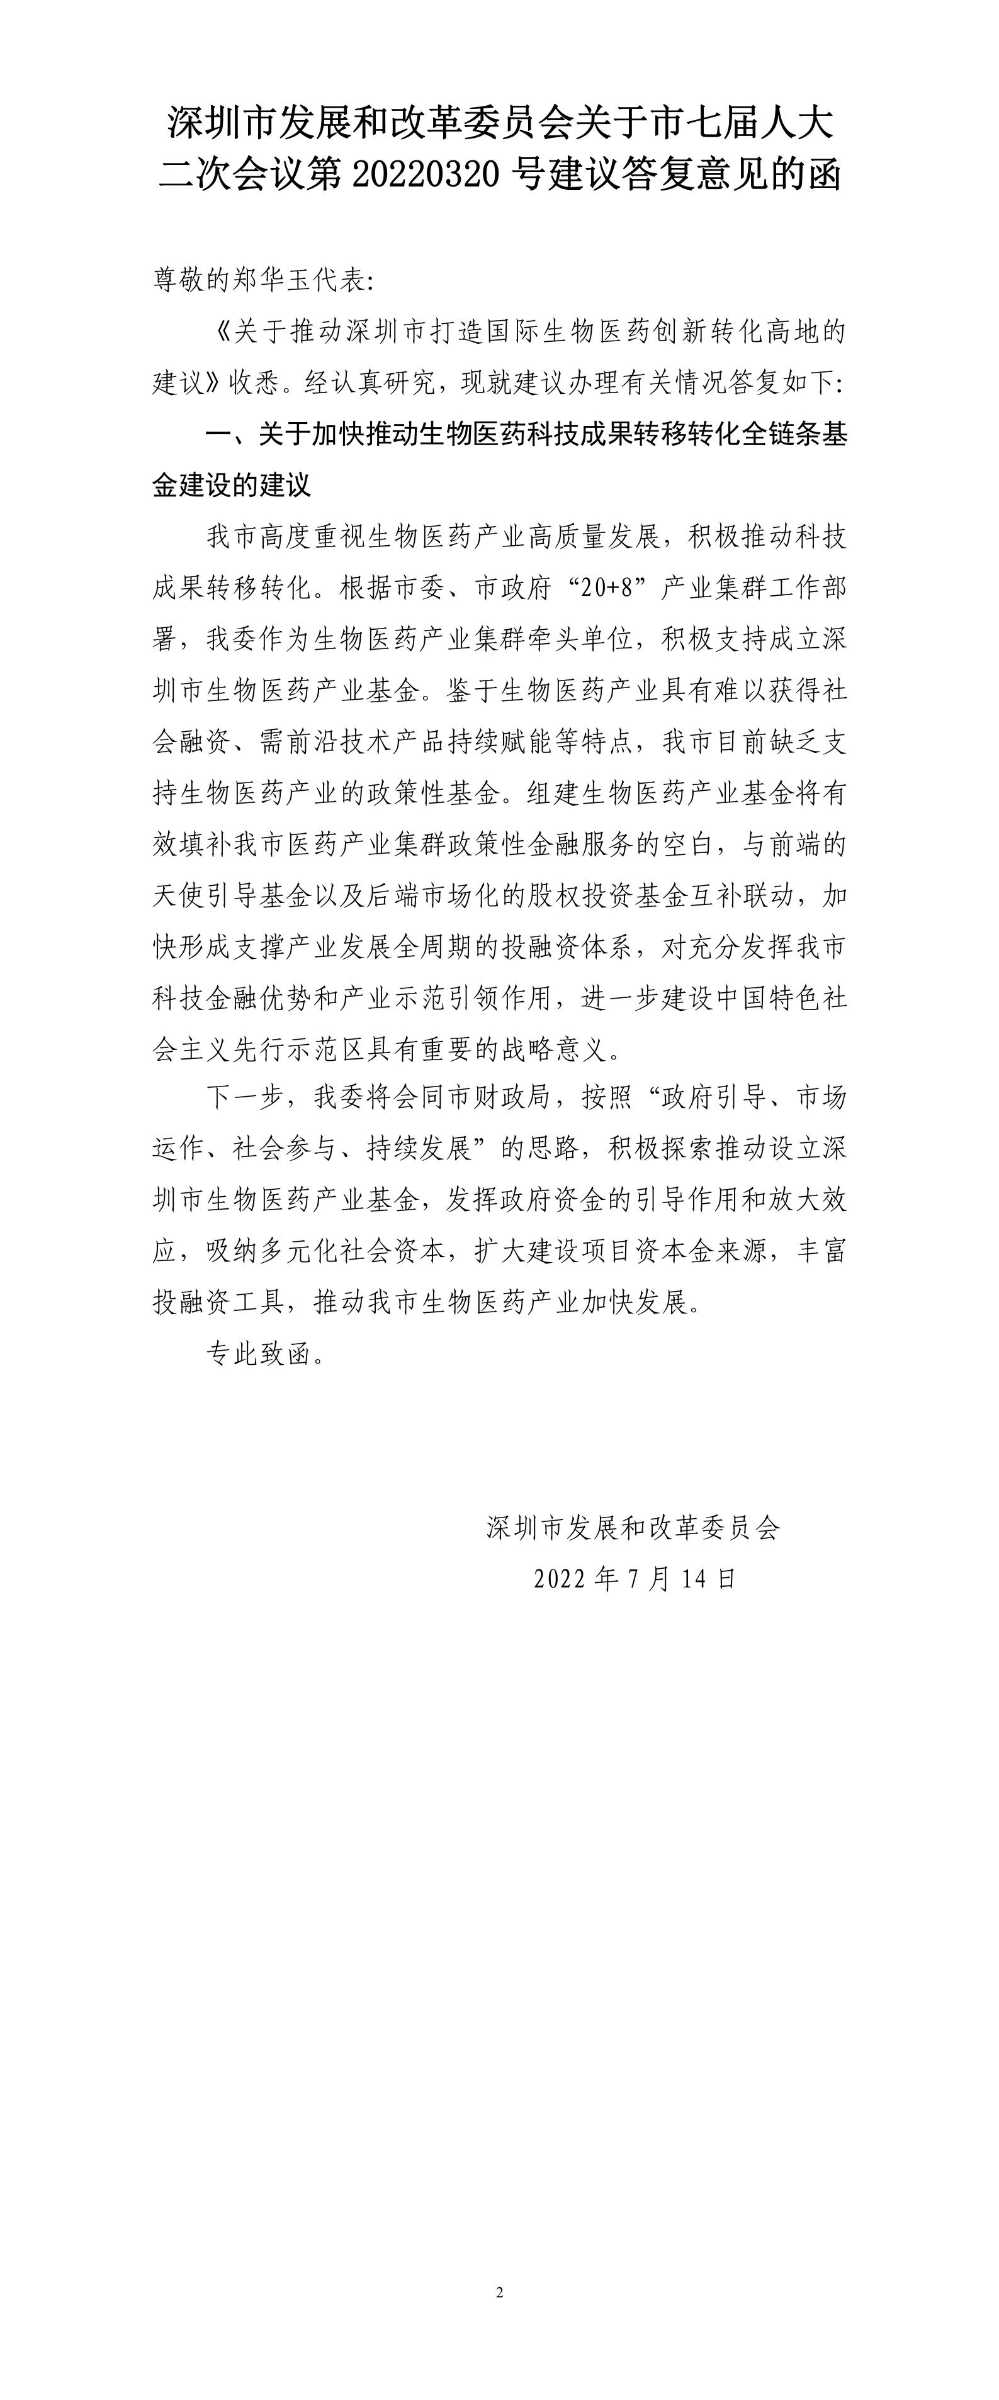 深圳市发展和改革委员会关于市七届人大二次会议第20220320号建议答复意见的函.jpg